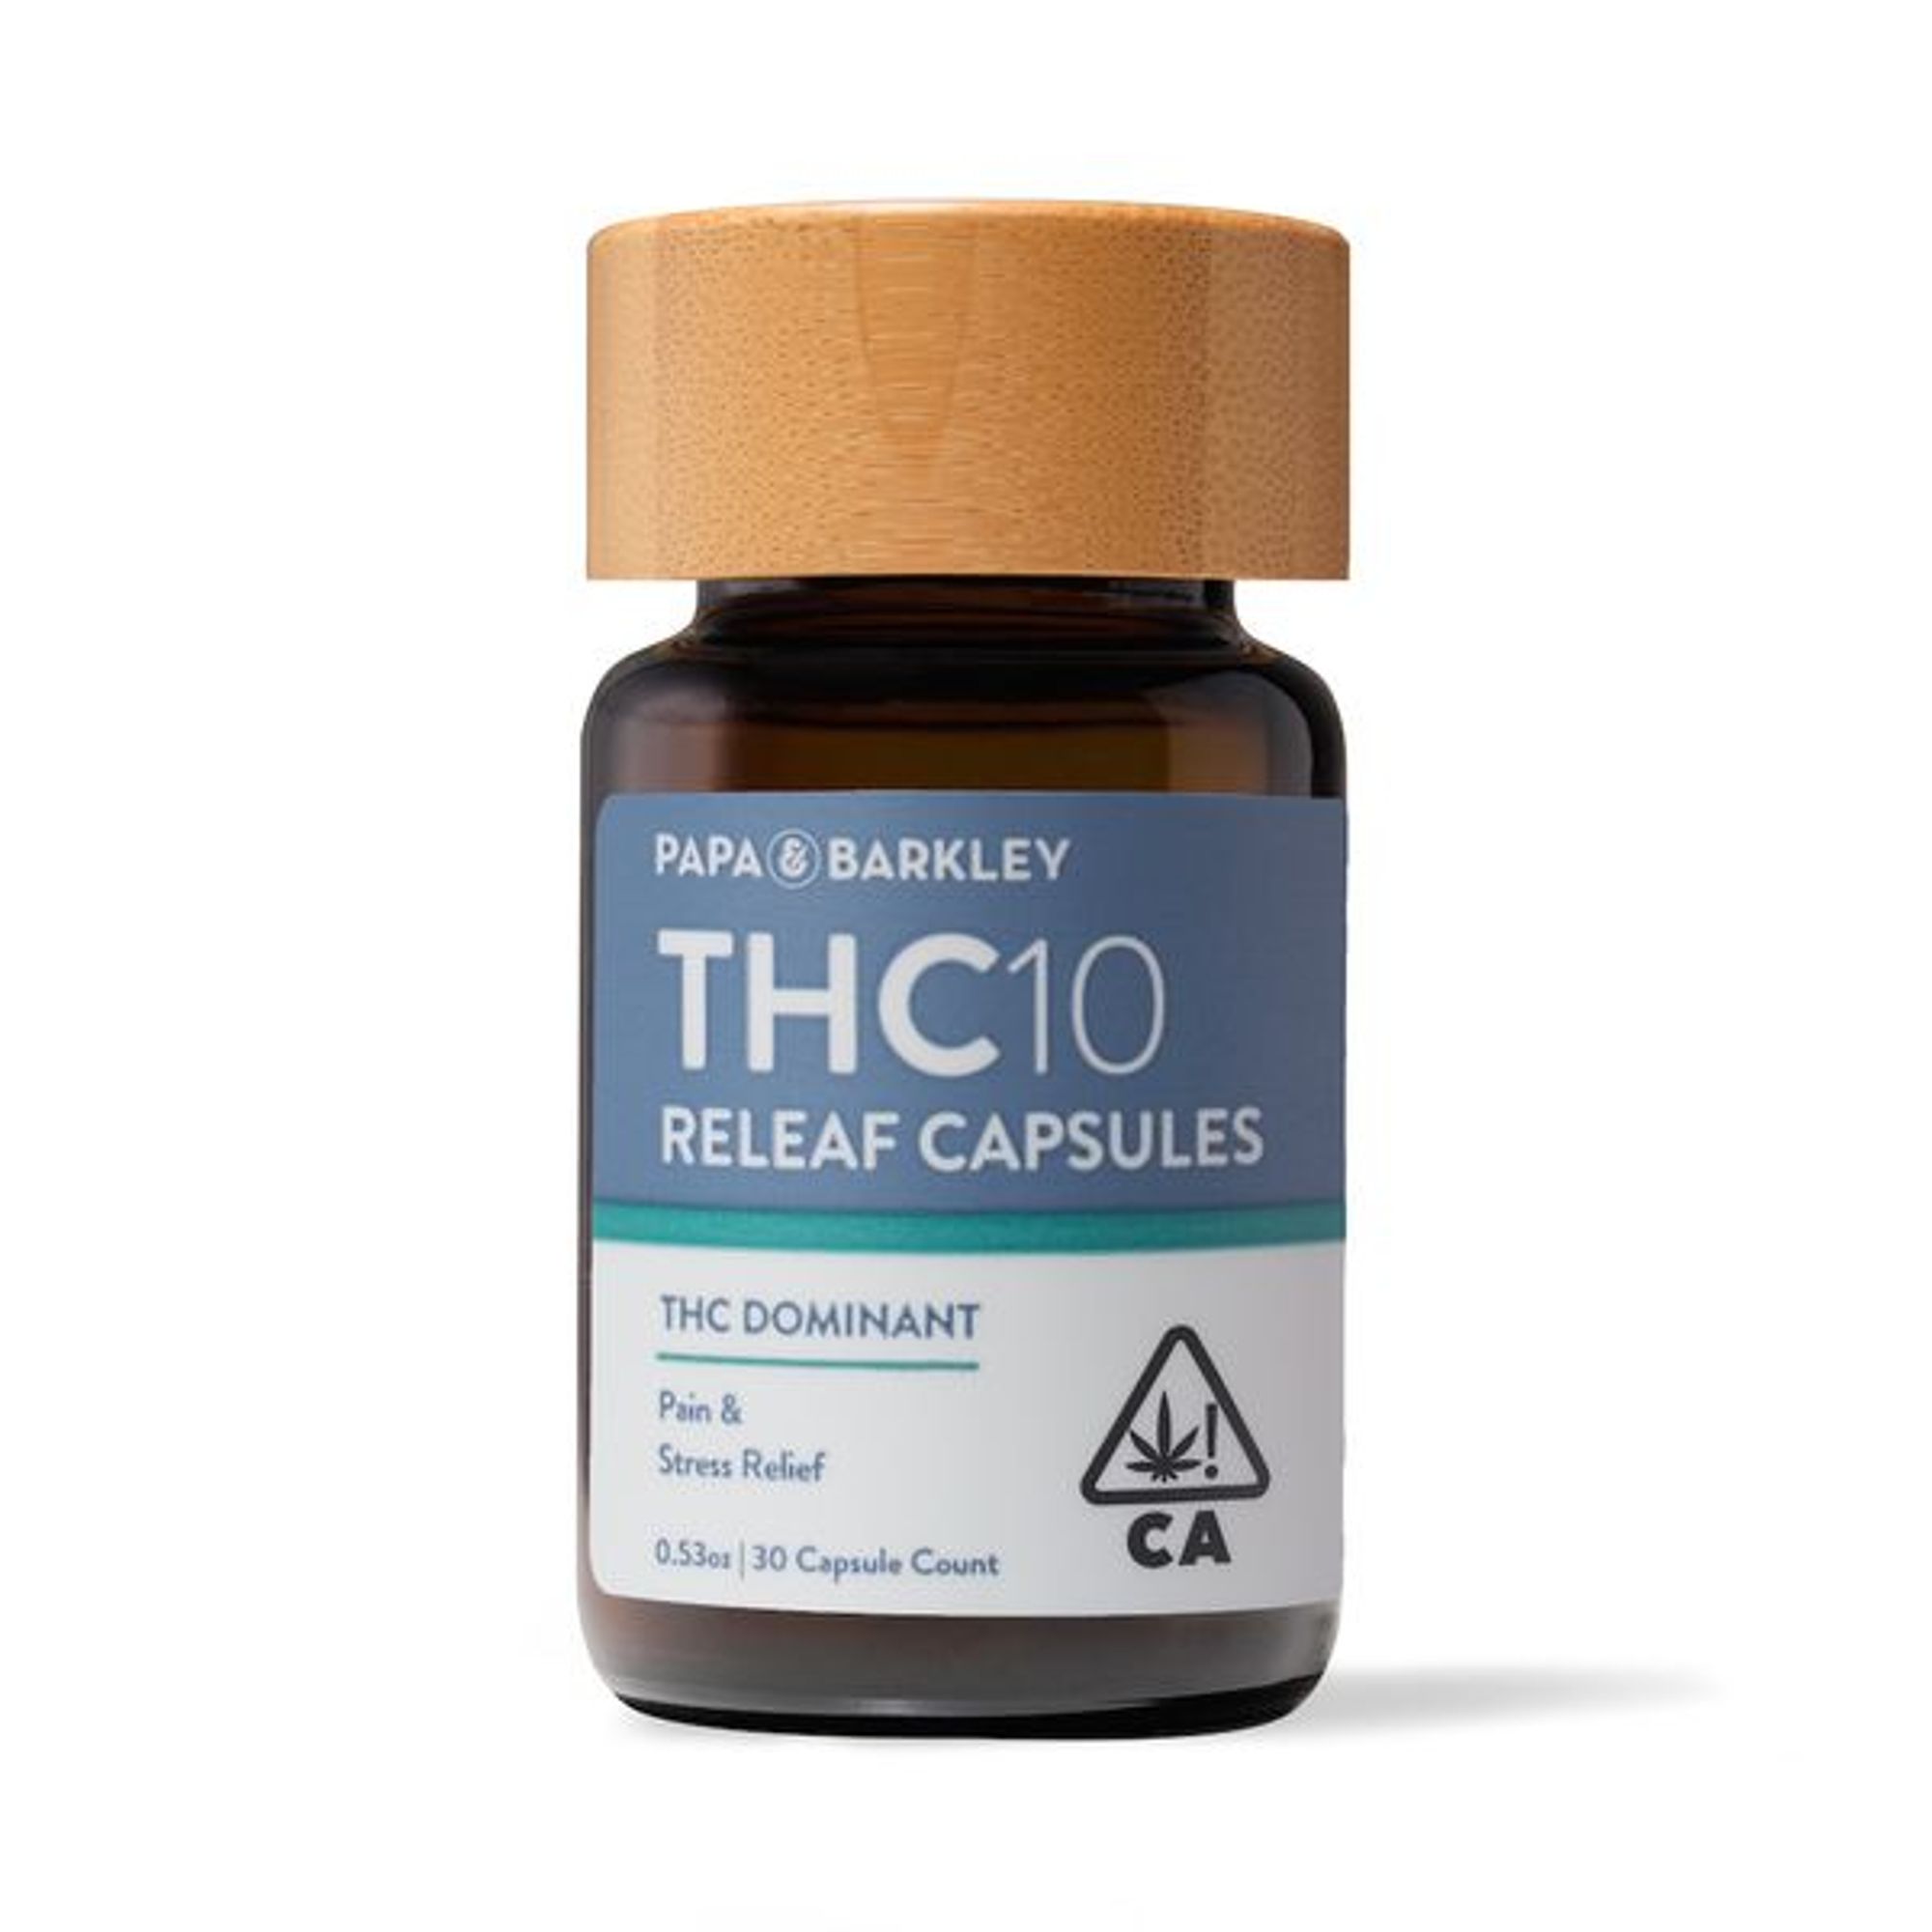 THC10 Releaf Capsules - 30 Count